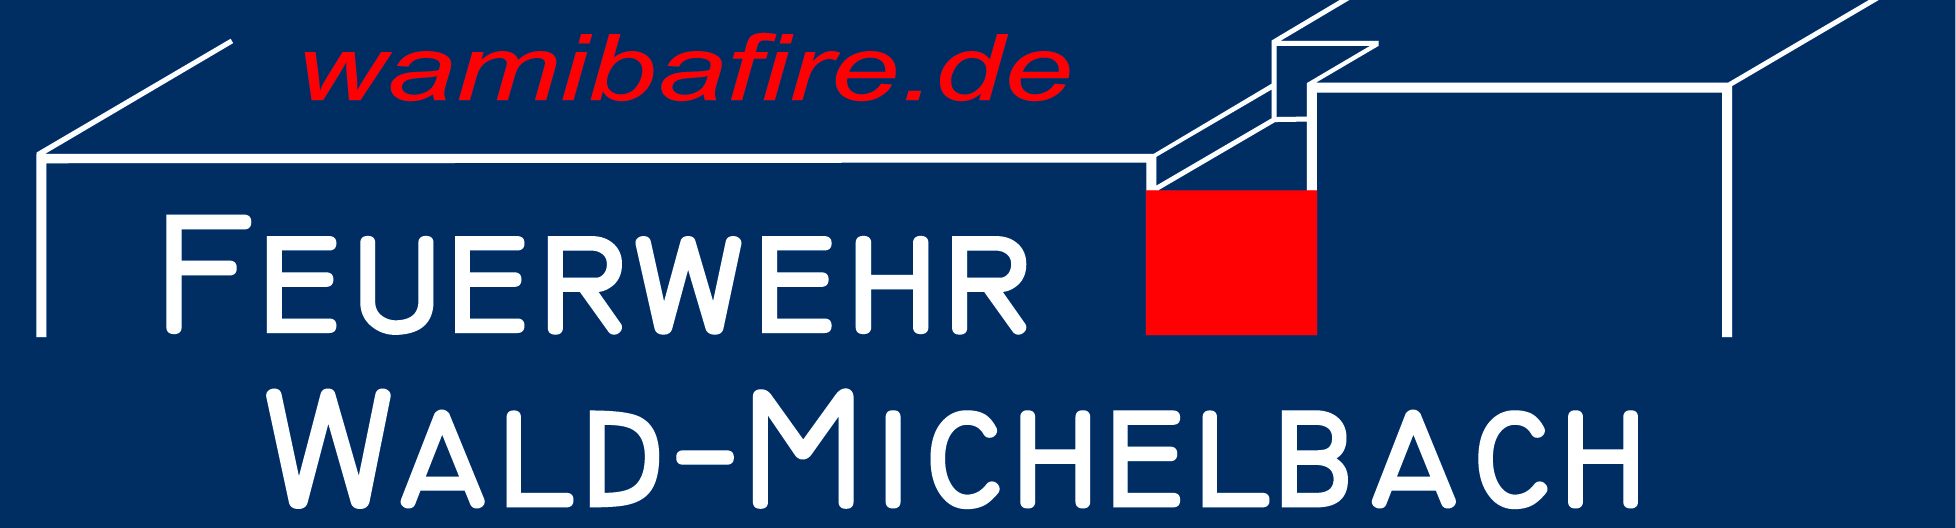 Feuerwehr Wald-Michelbach